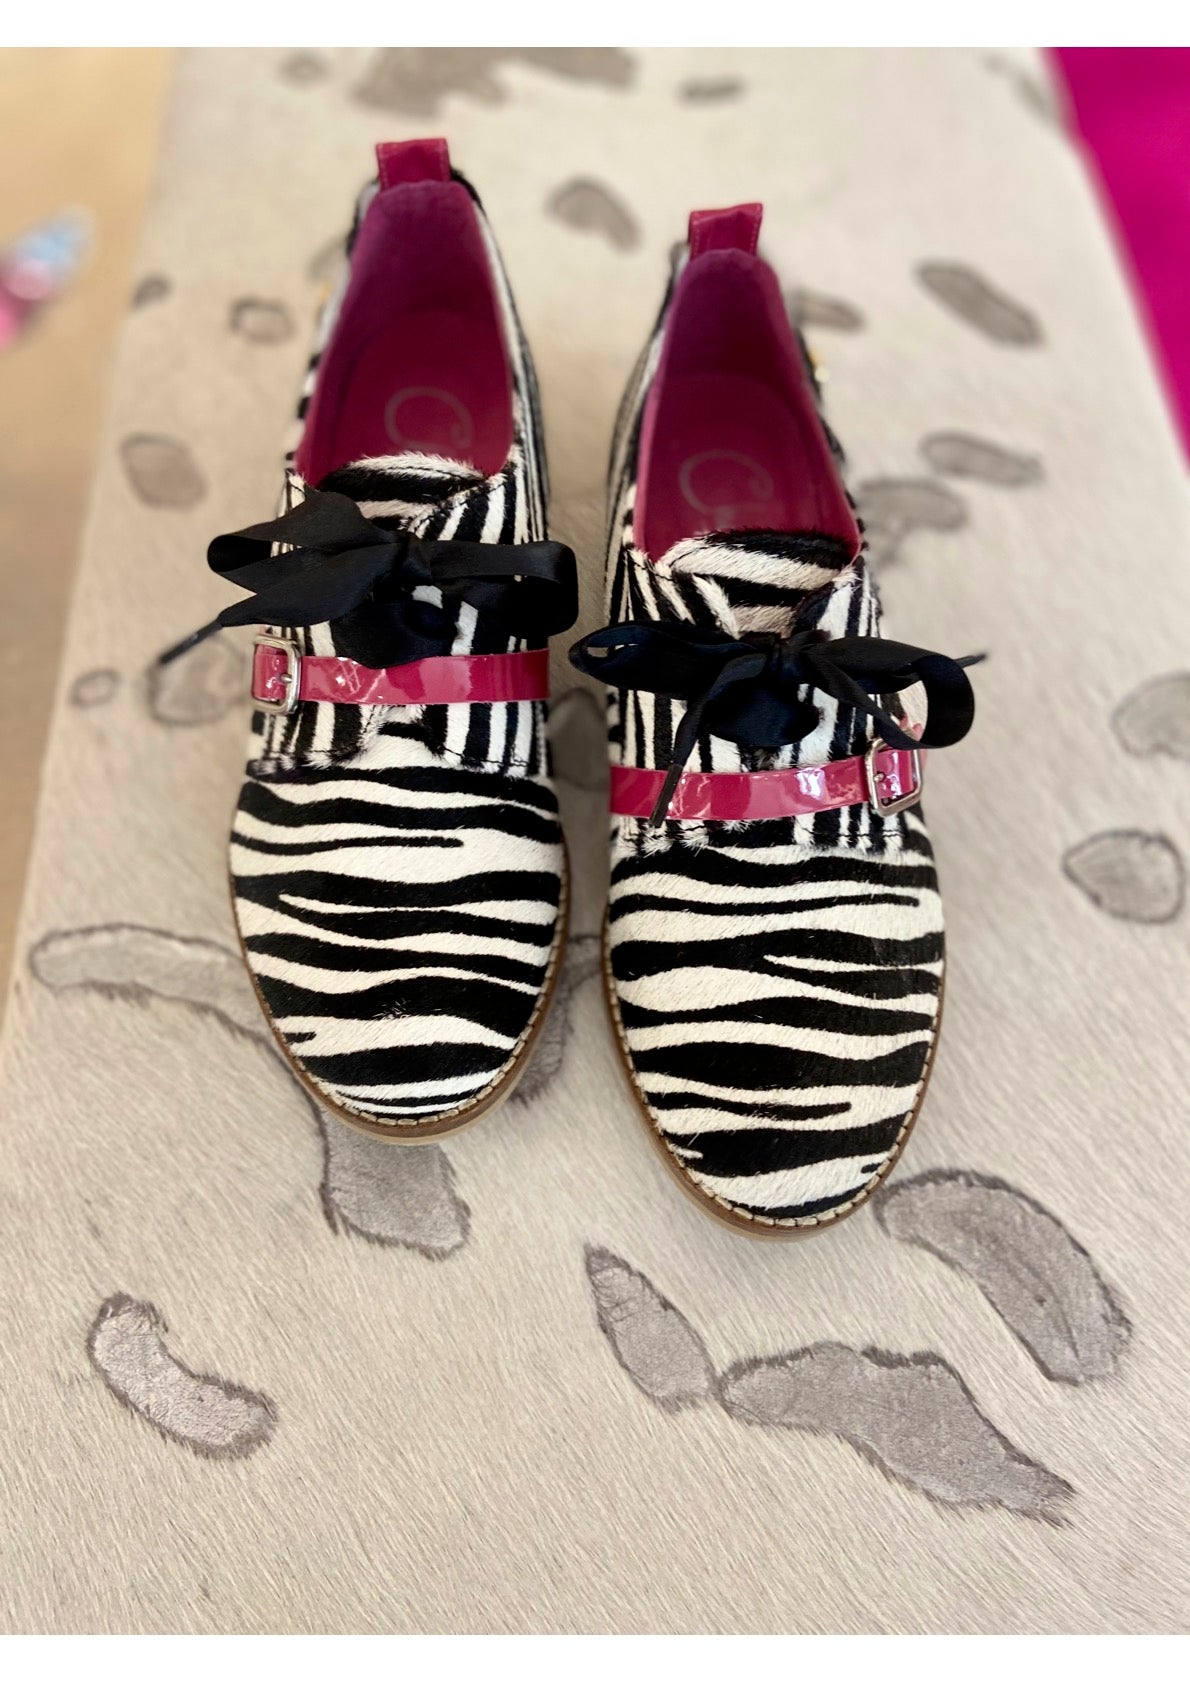 Excuse moi - Zebra cow hide lace up shoe